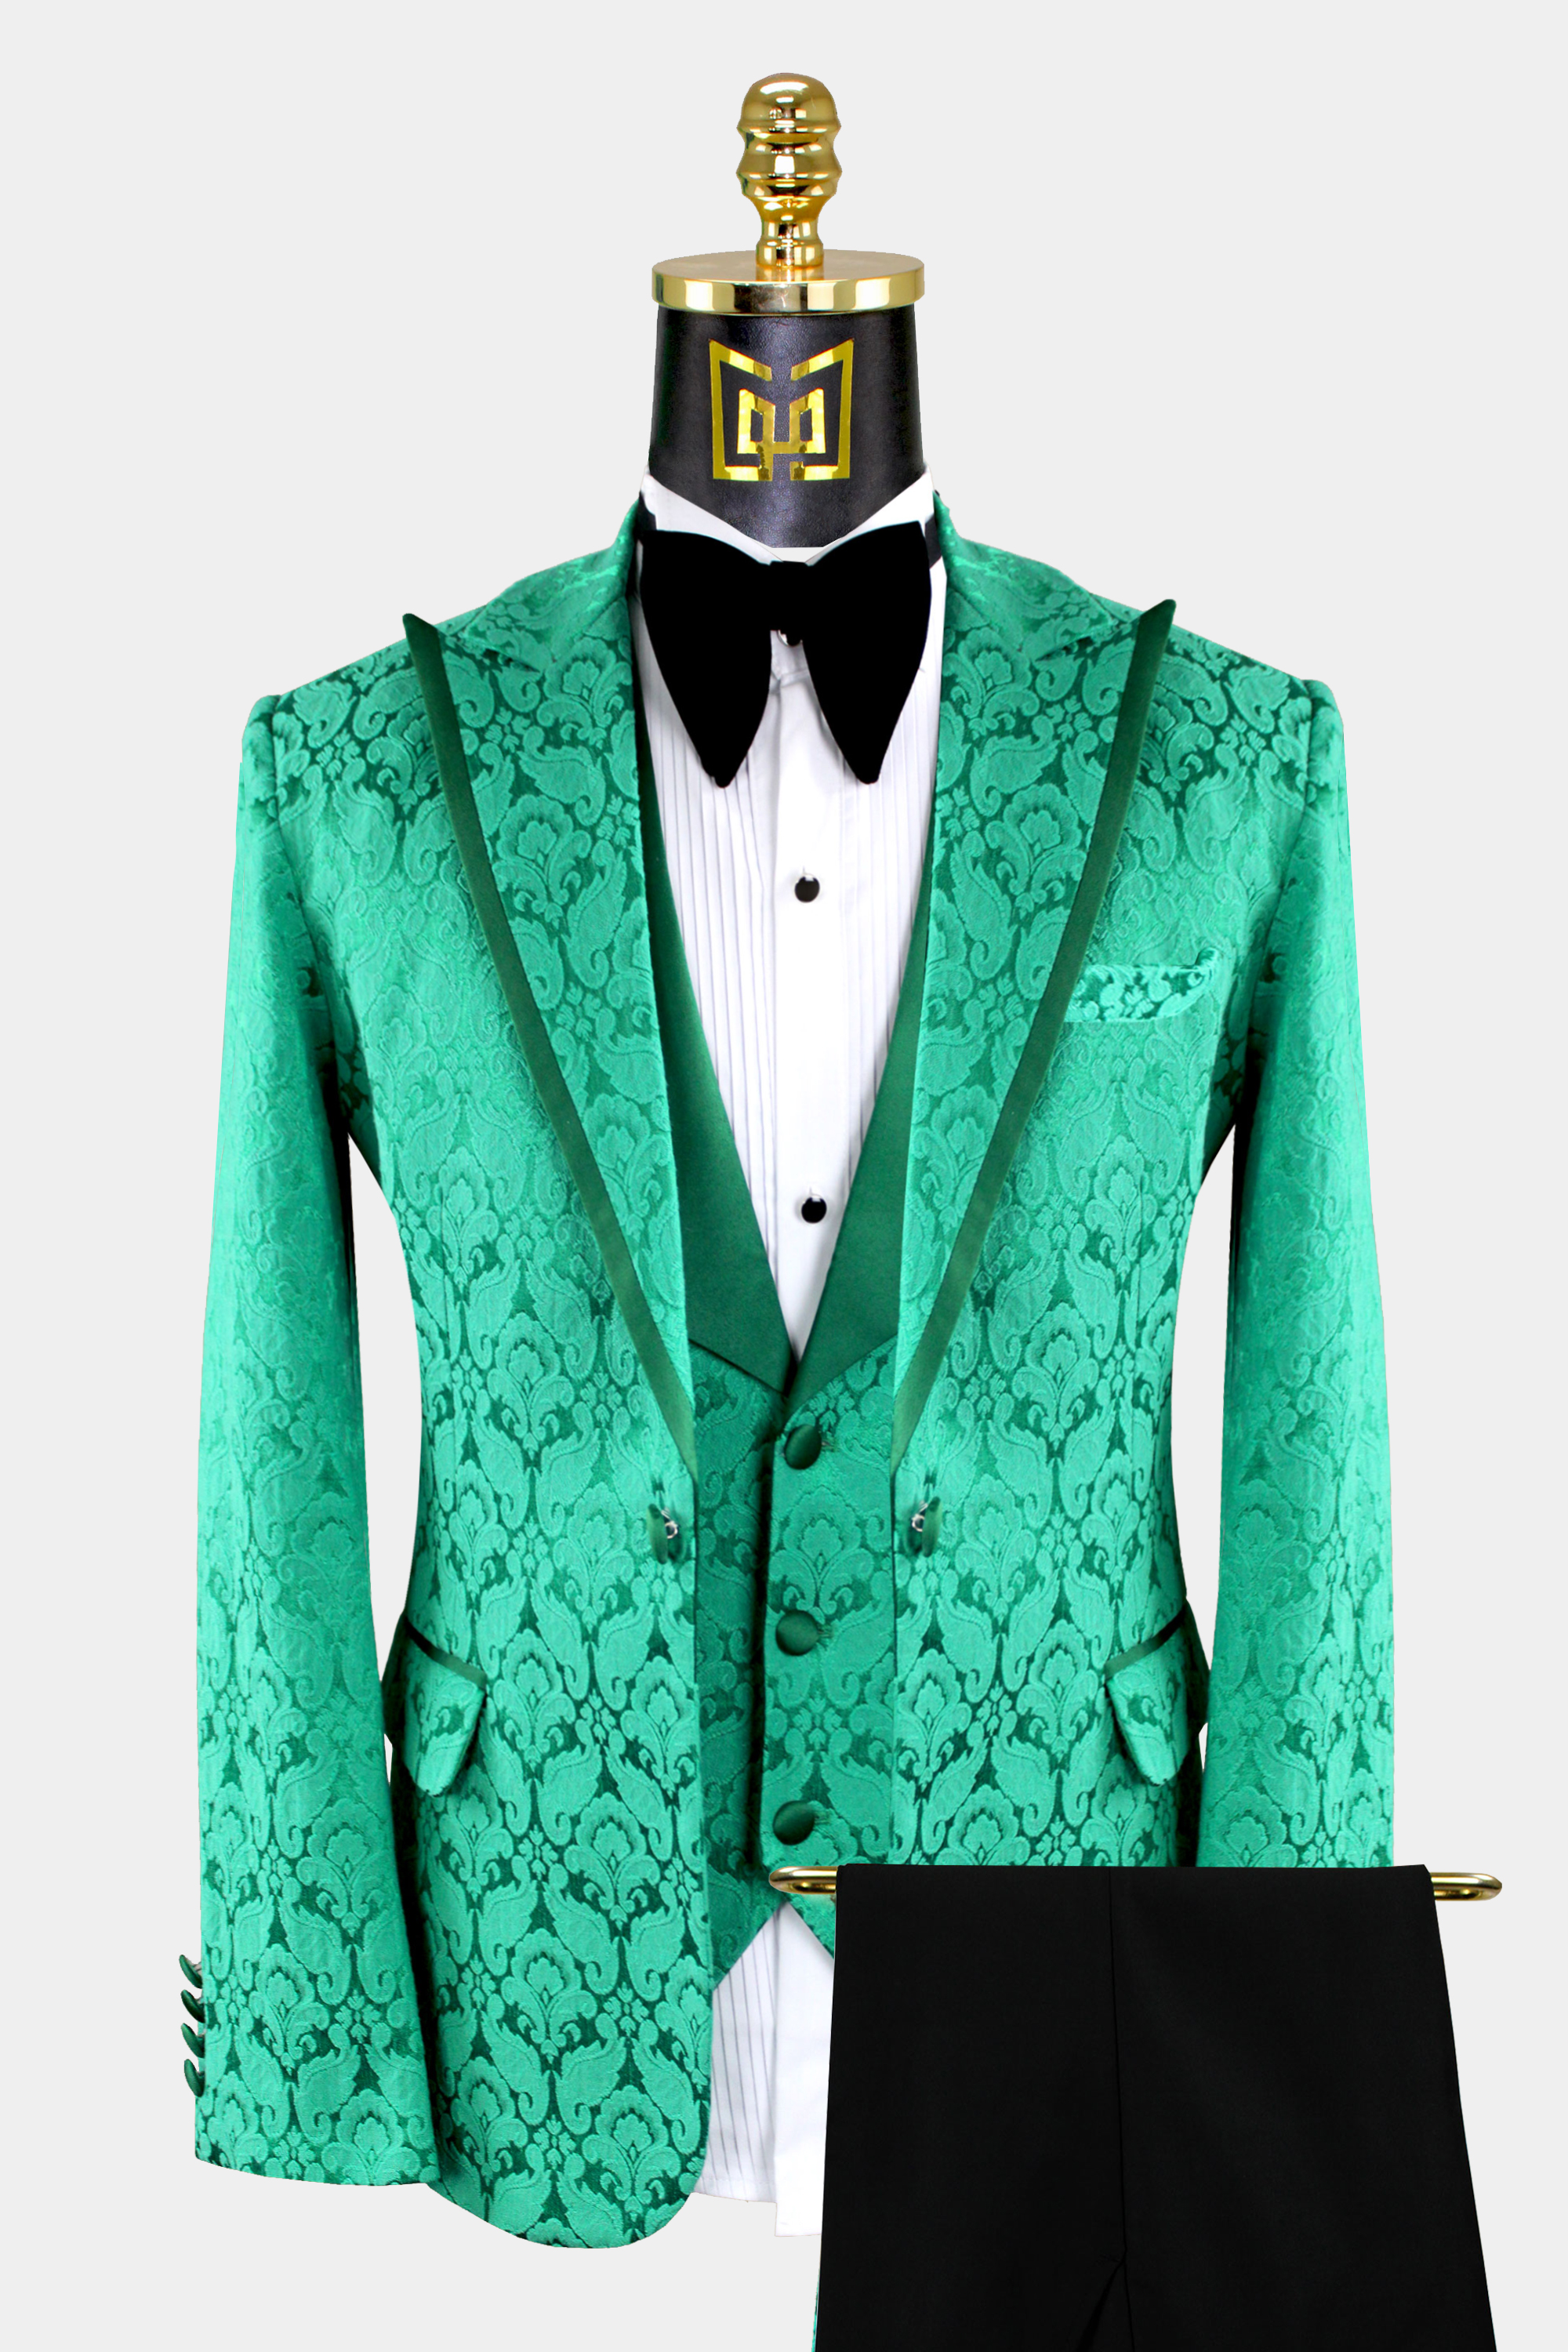 Teal-Green-Tuxedo-Groom-Wedding-Prom-Suit-from-Gentlemansguru.Com_